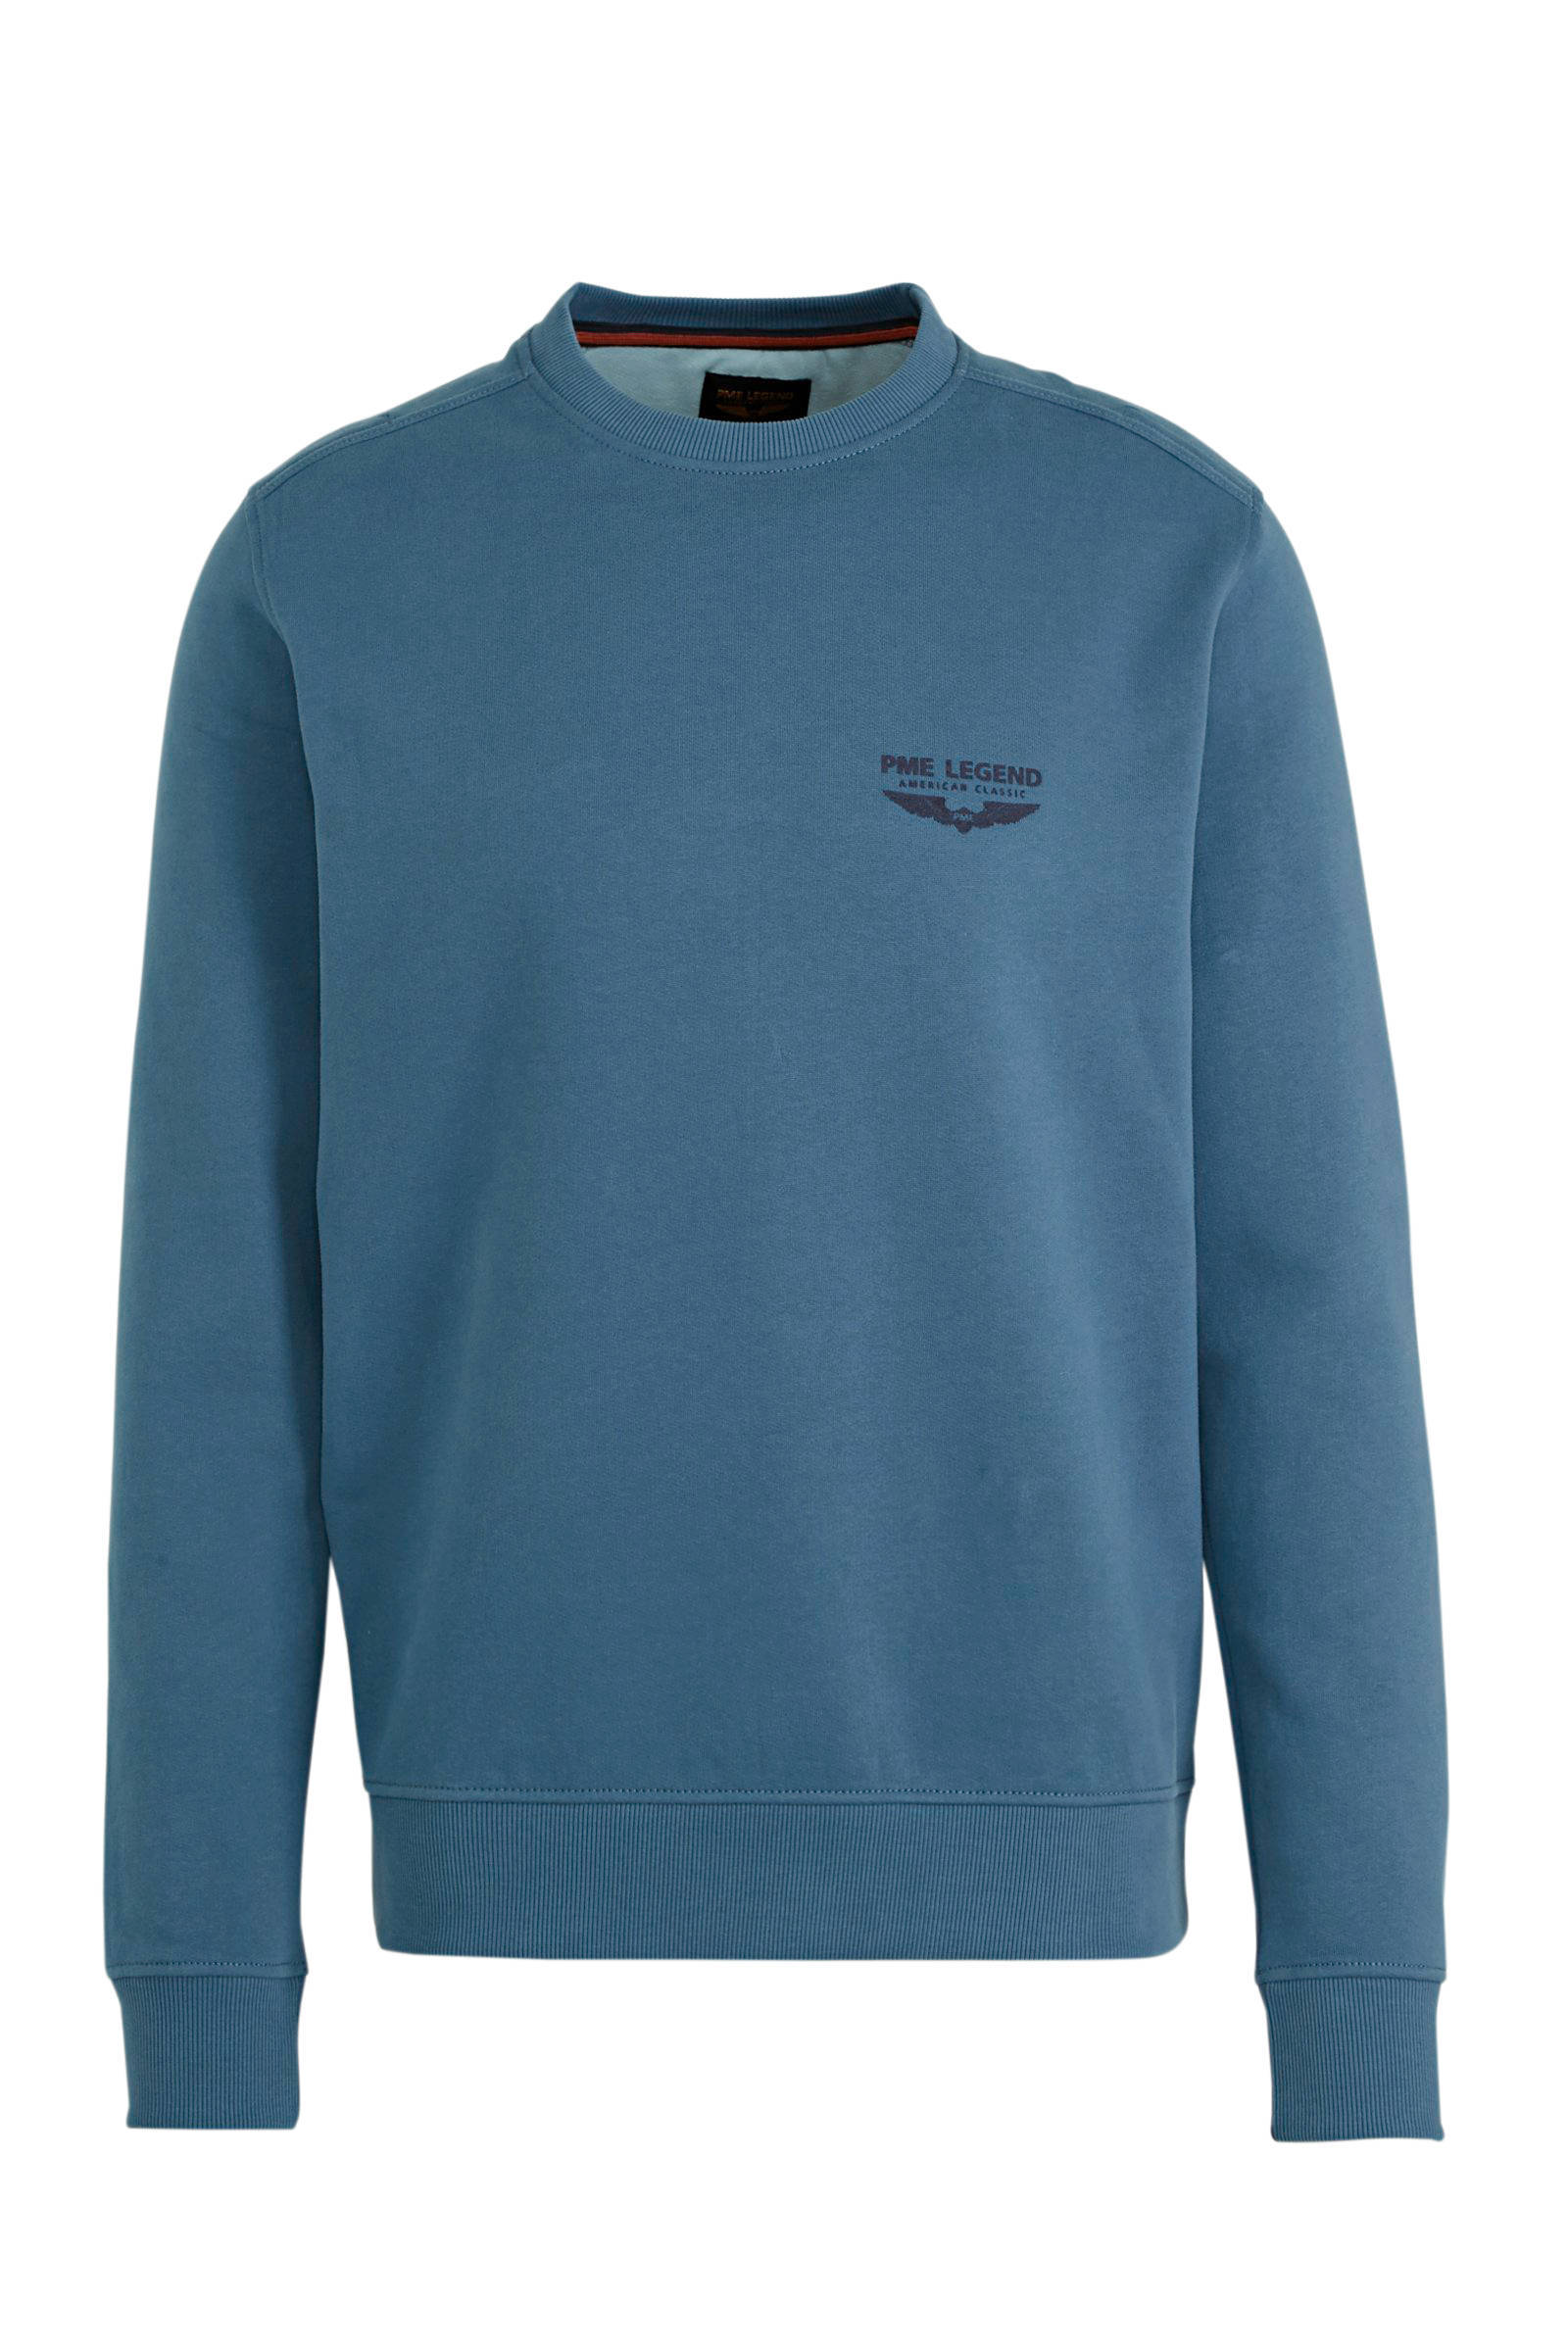 PME Legend sweater met logo blauw online kopen